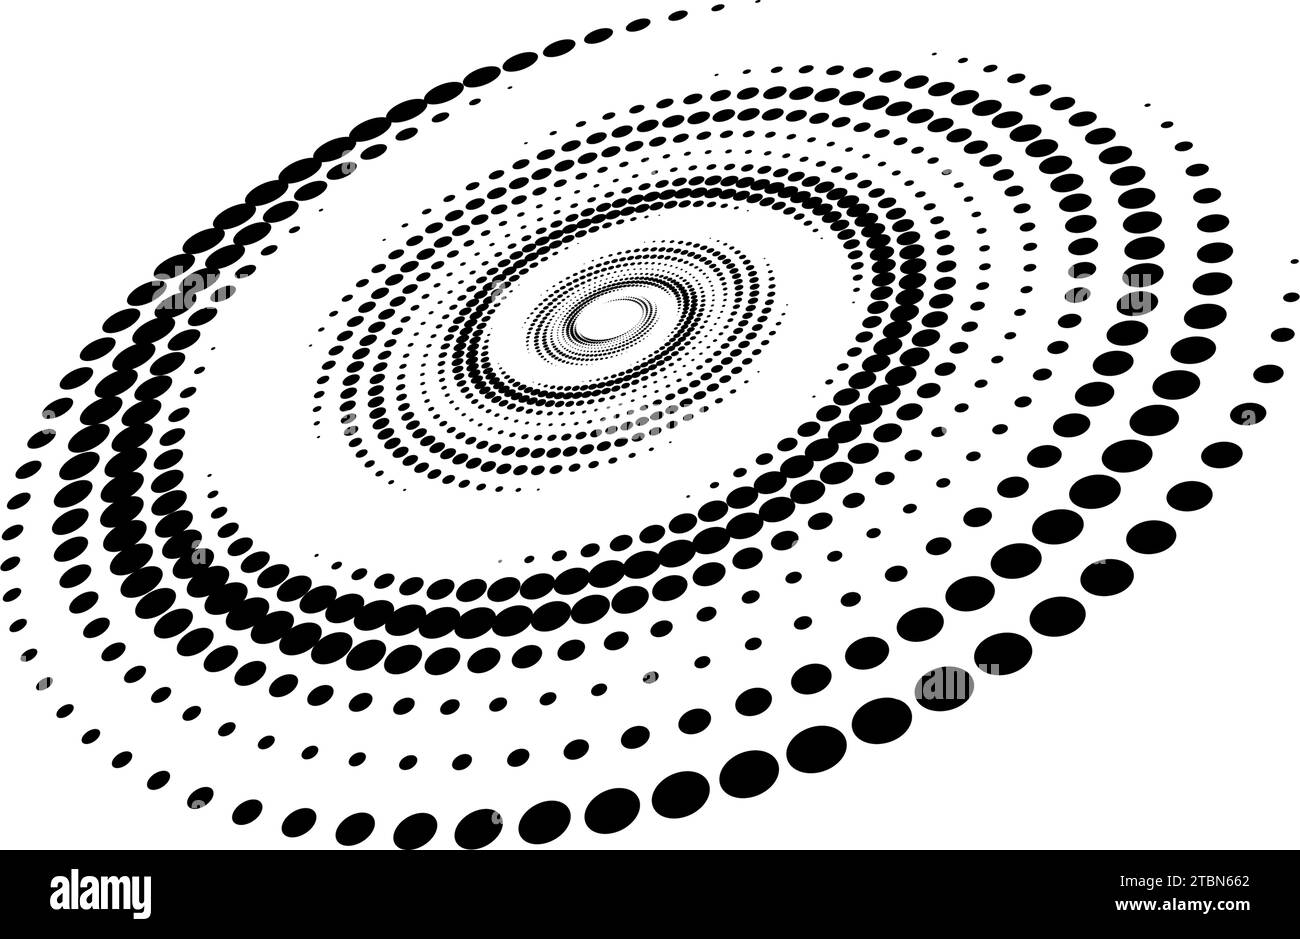 Spiralförmiges gepunktetes Linienelement. Radiale, drehbare Halbtonstruktur. Kreiswirbelpunkte werden perspektivisch geformt. Schwarzer abstrakter Hintergrund für Poster, Banner, Logo, Symbol, Collage, Präsentation, Emblem. Vektor Stock Vektor